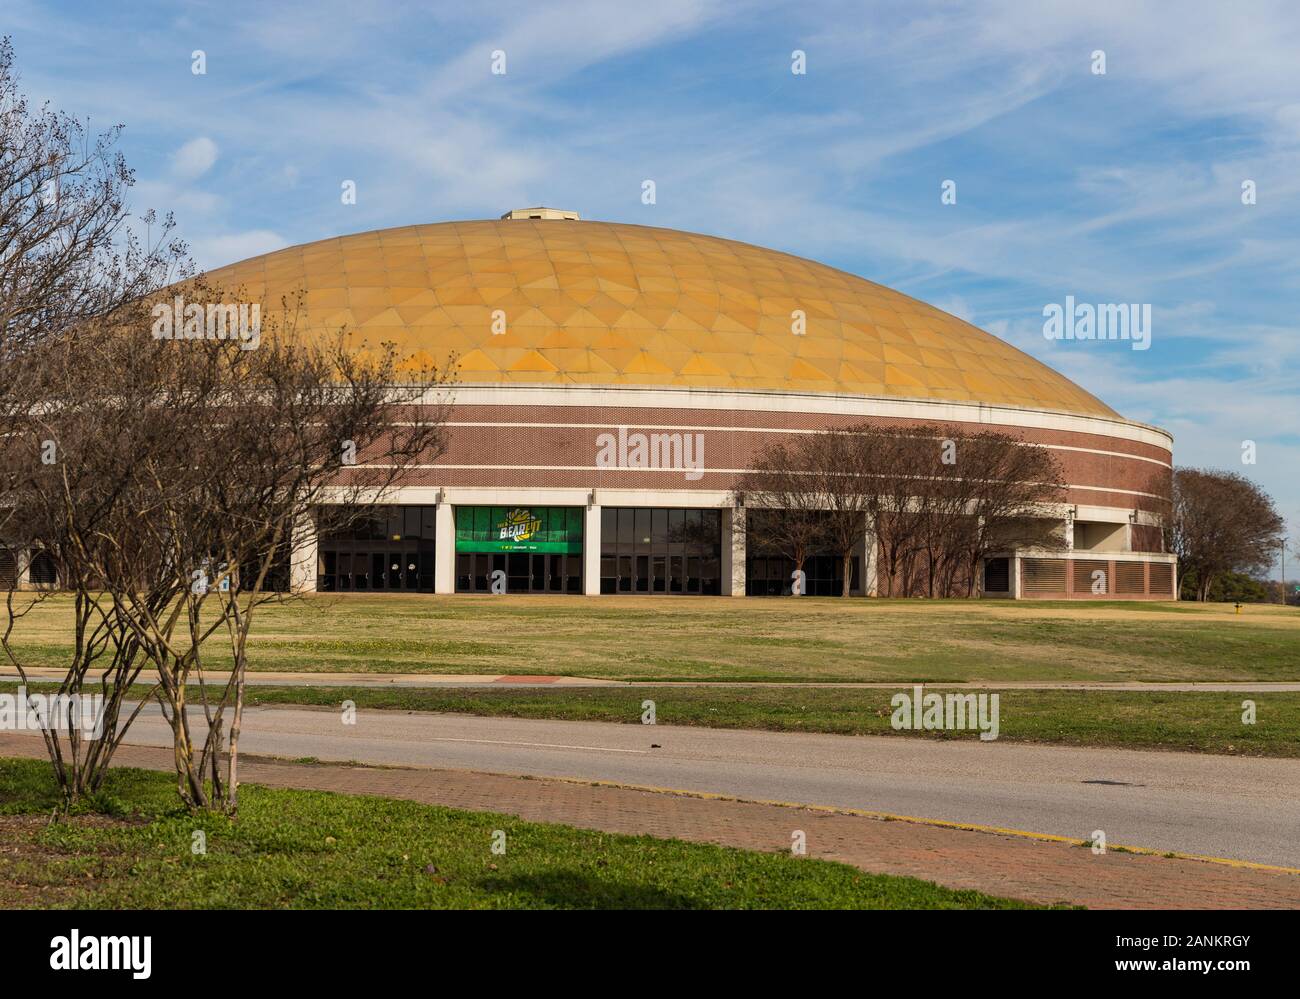 Waco, TX / USA - 12 de enero de 2020: Ferrell Center en el Campus de la Universidad de Baylor Foto de stock